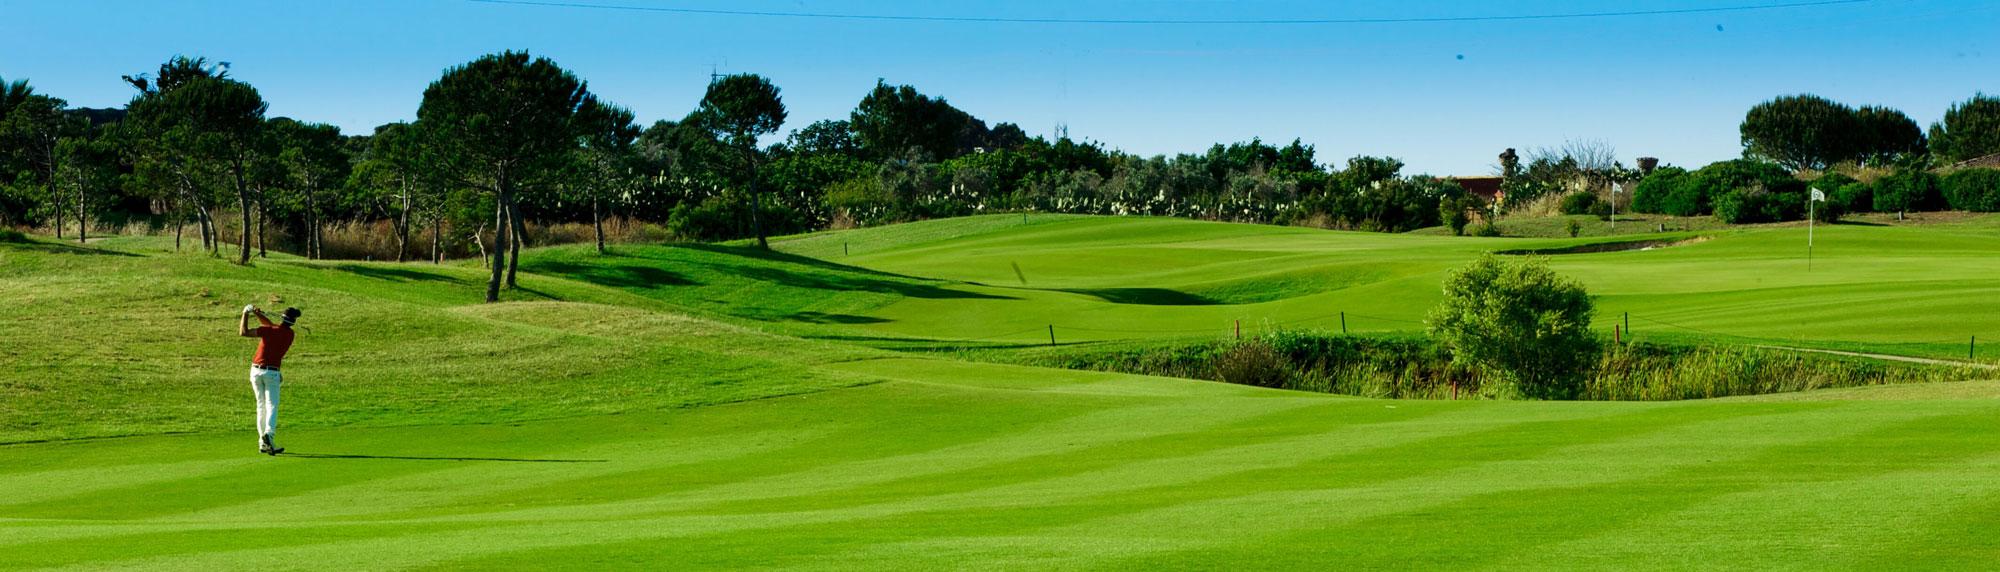 View Golf La Estancia's impressive golf course situated in brilliant Costa de la Luz.